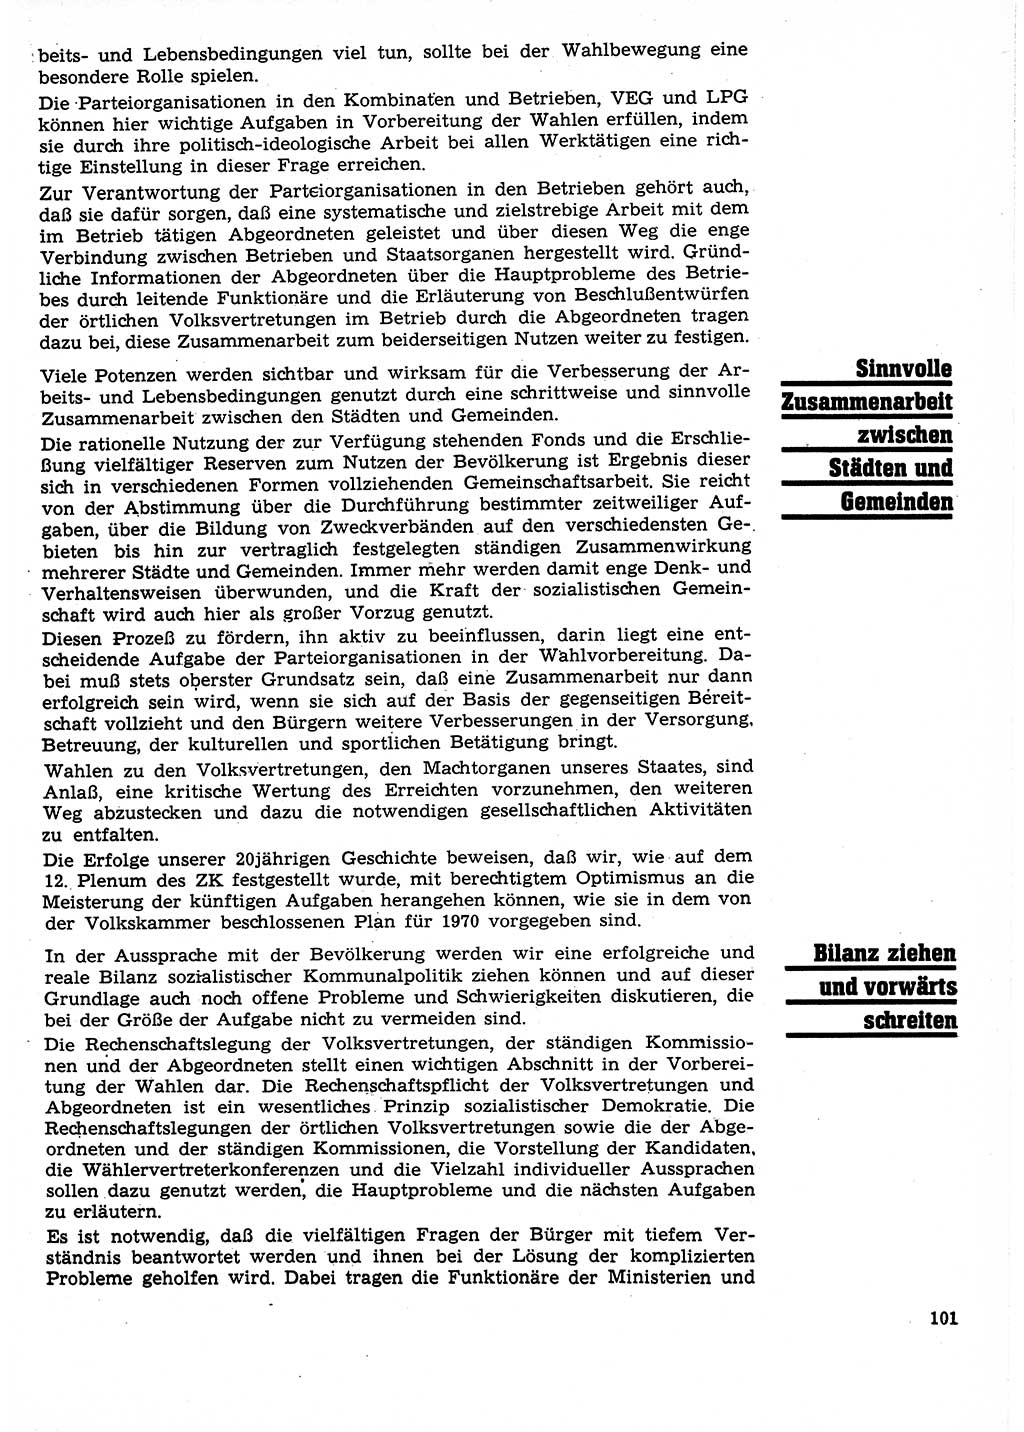 Neuer Weg (NW), Organ des Zentralkomitees (ZK) der SED (Sozialistische Einheitspartei Deutschlands) für Fragen des Parteilebens, 25. Jahrgang [Deutsche Demokratische Republik (DDR)] 1970, Seite 101 (NW ZK SED DDR 1970, S. 101)